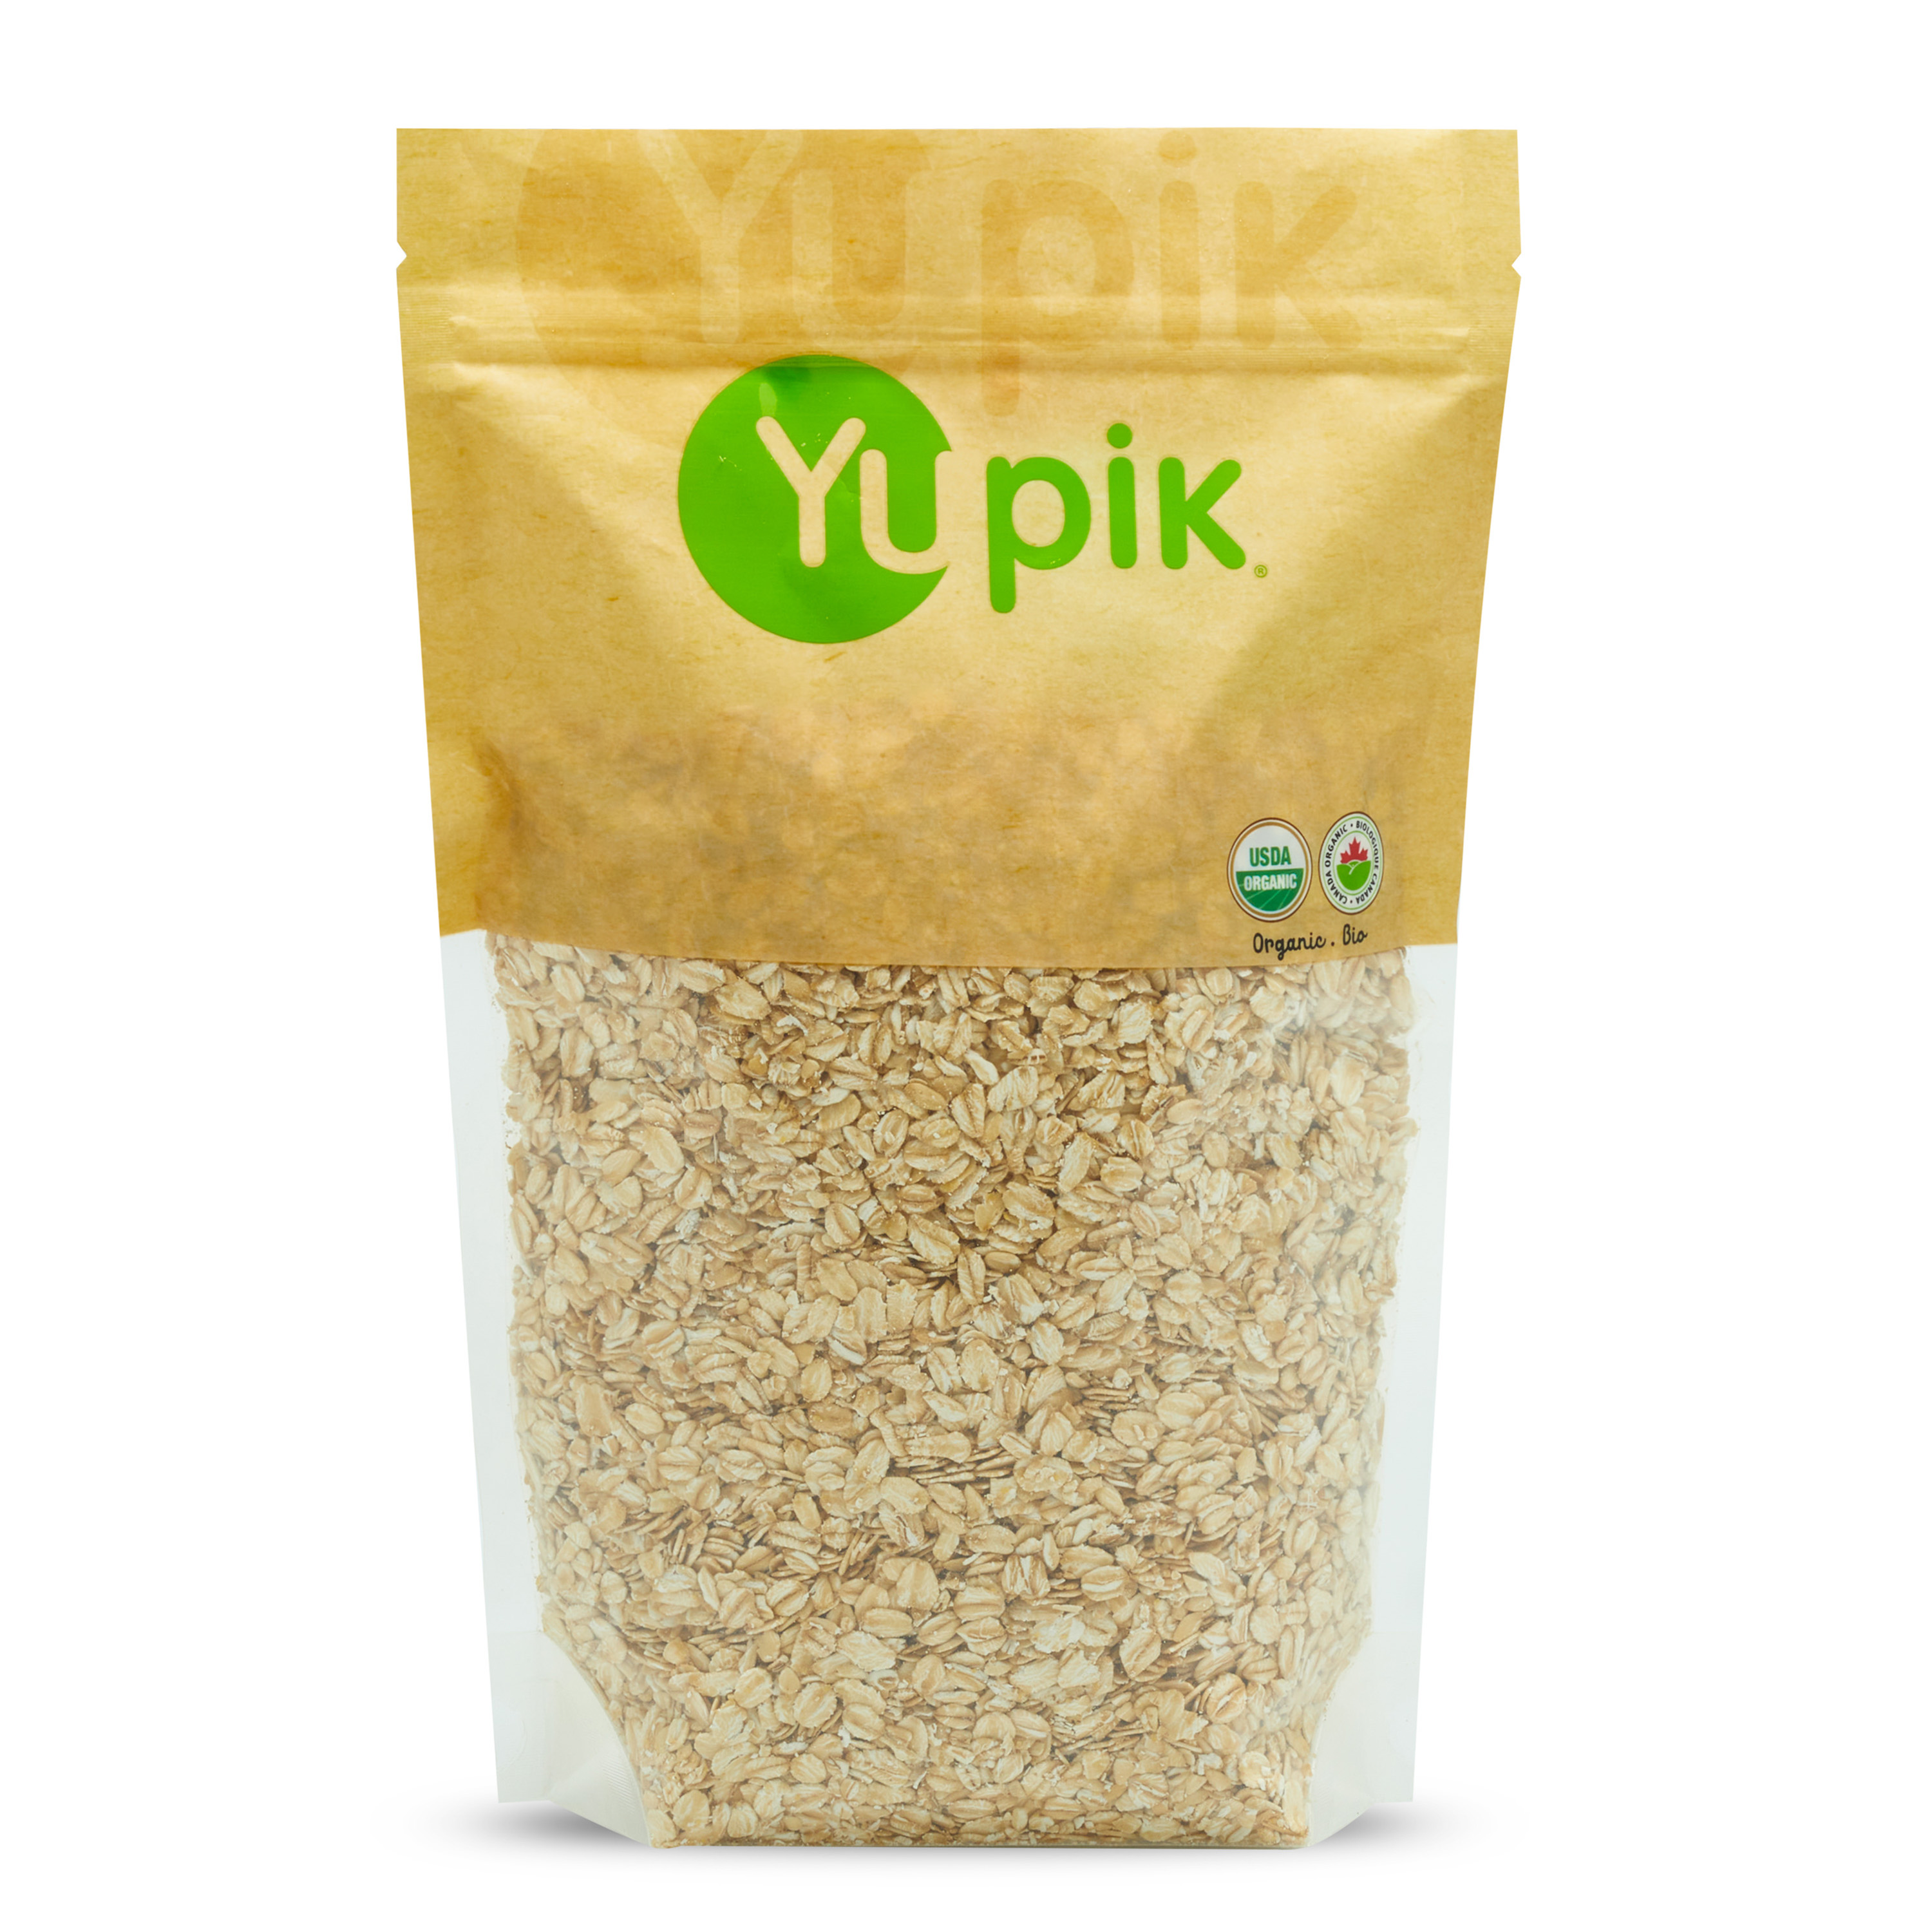 Organic Gluten-Free whole grain oats.